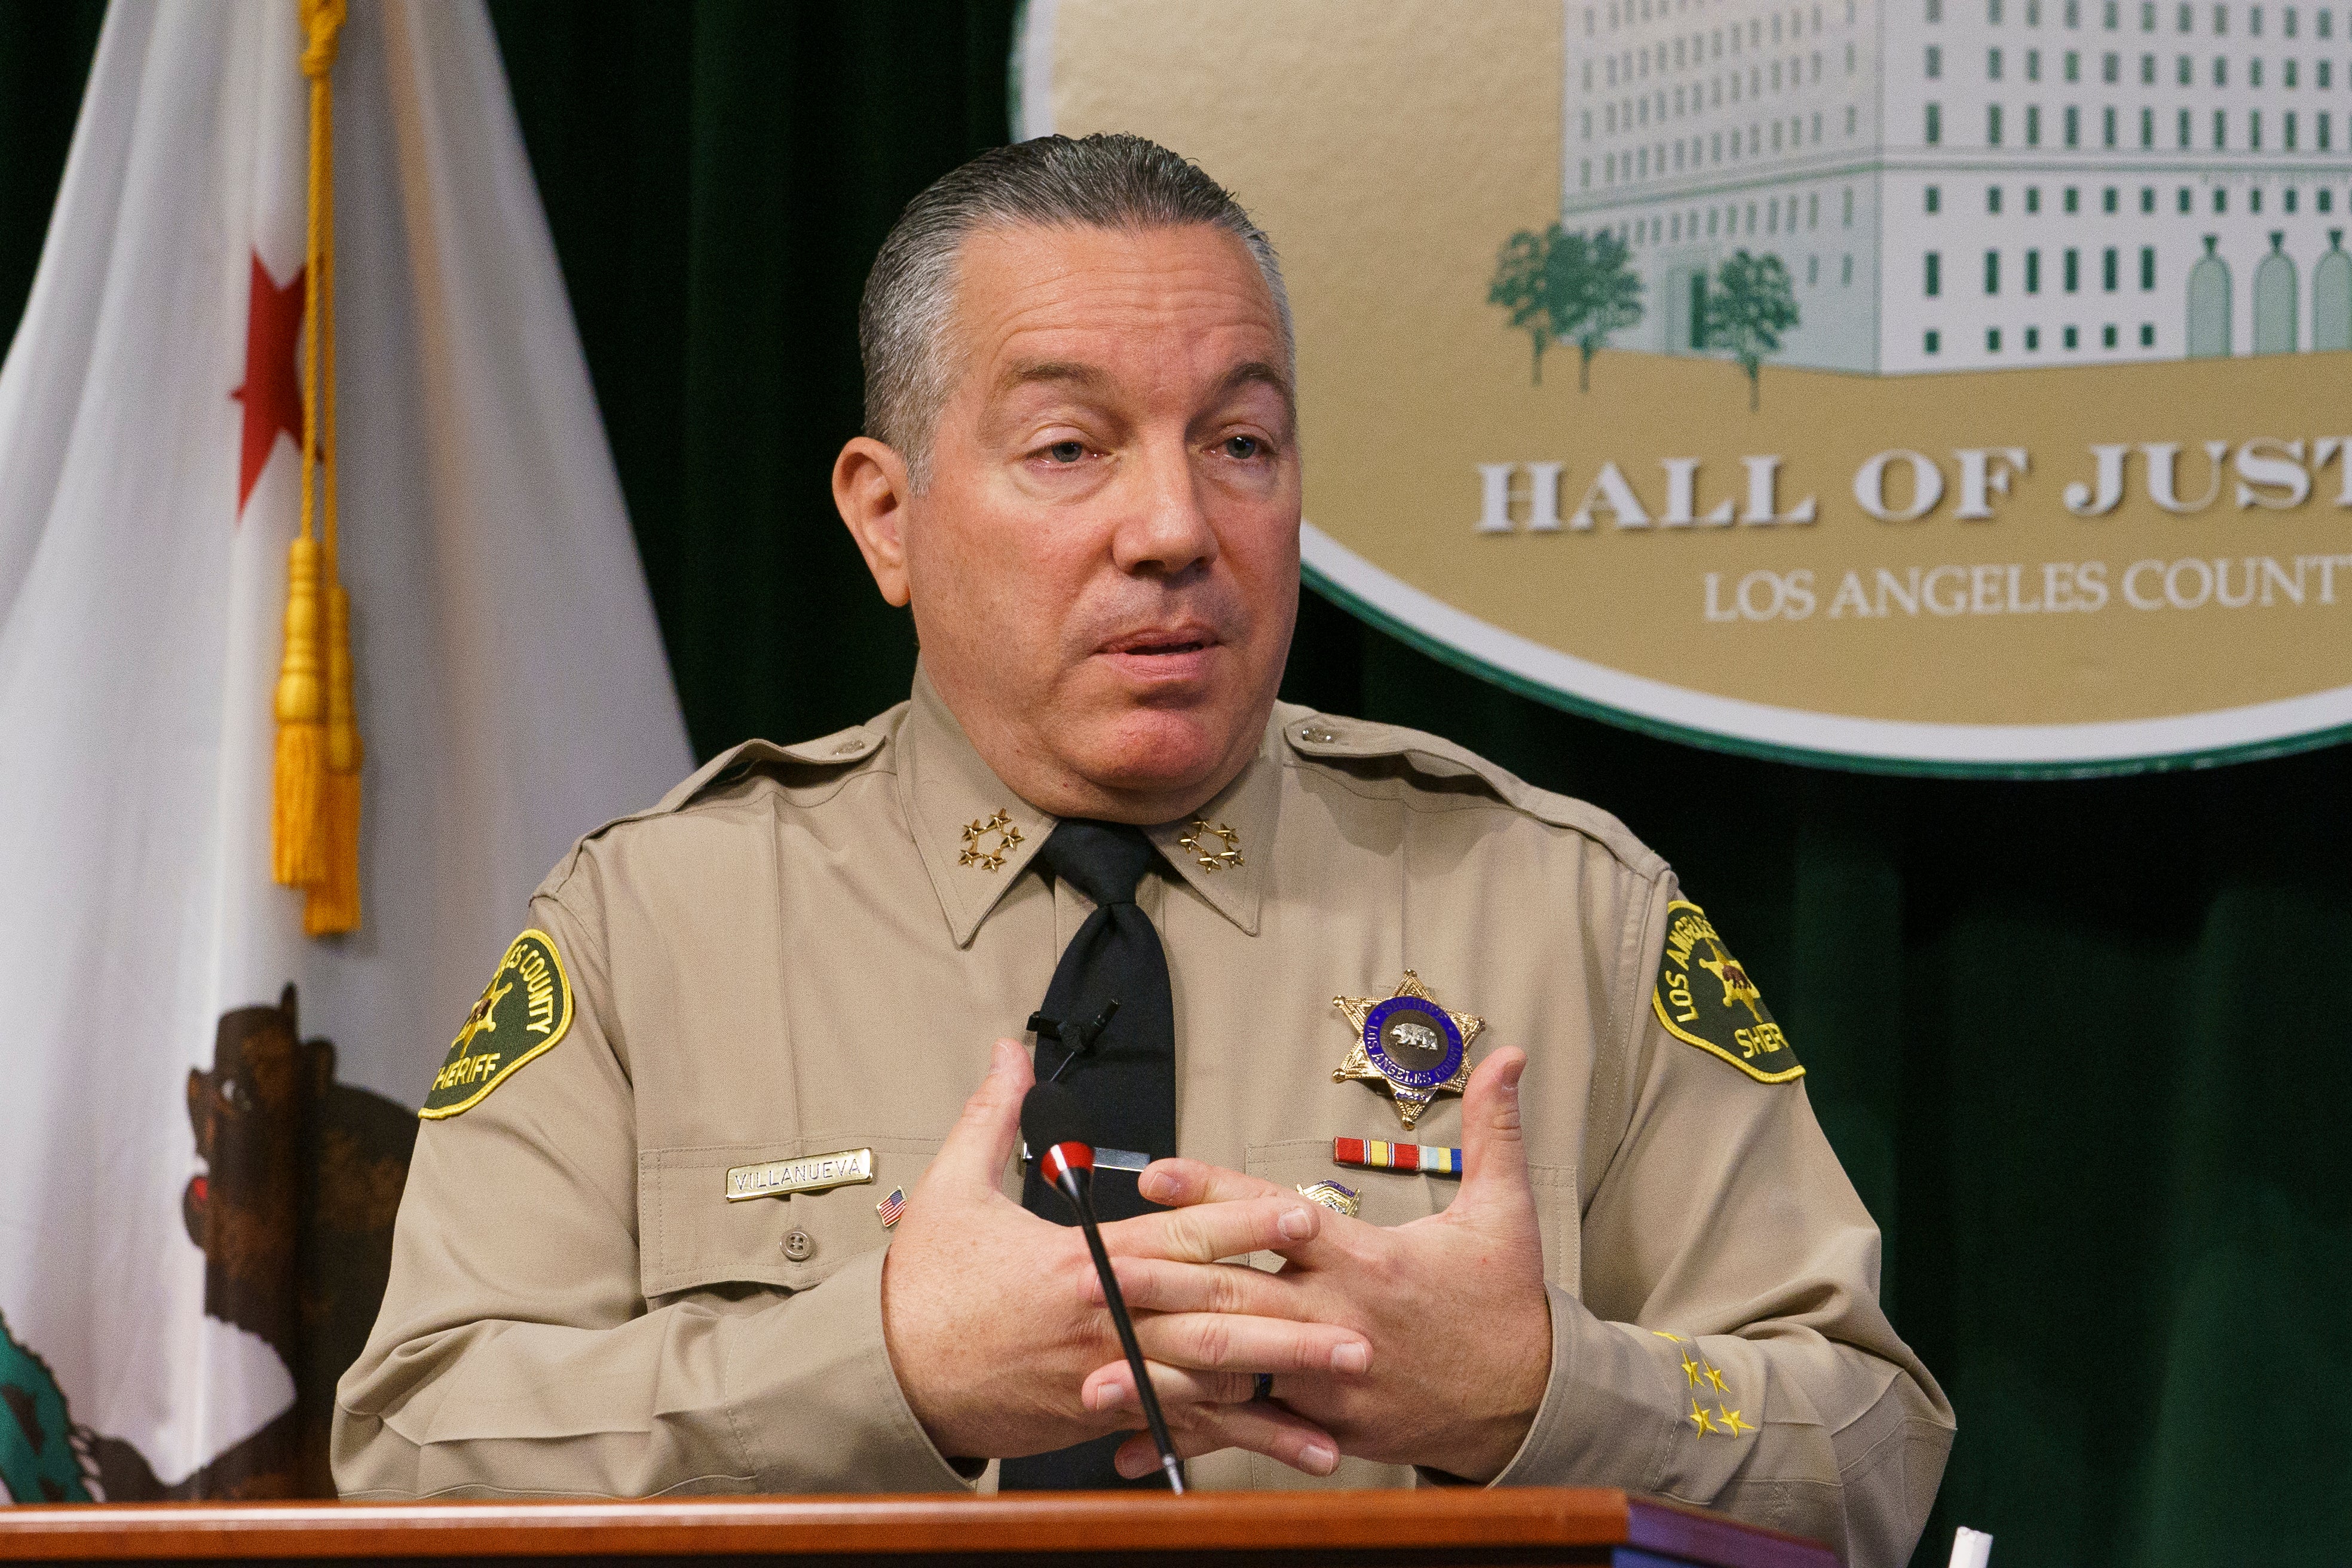 LA County Sheriff Alex Villanueva